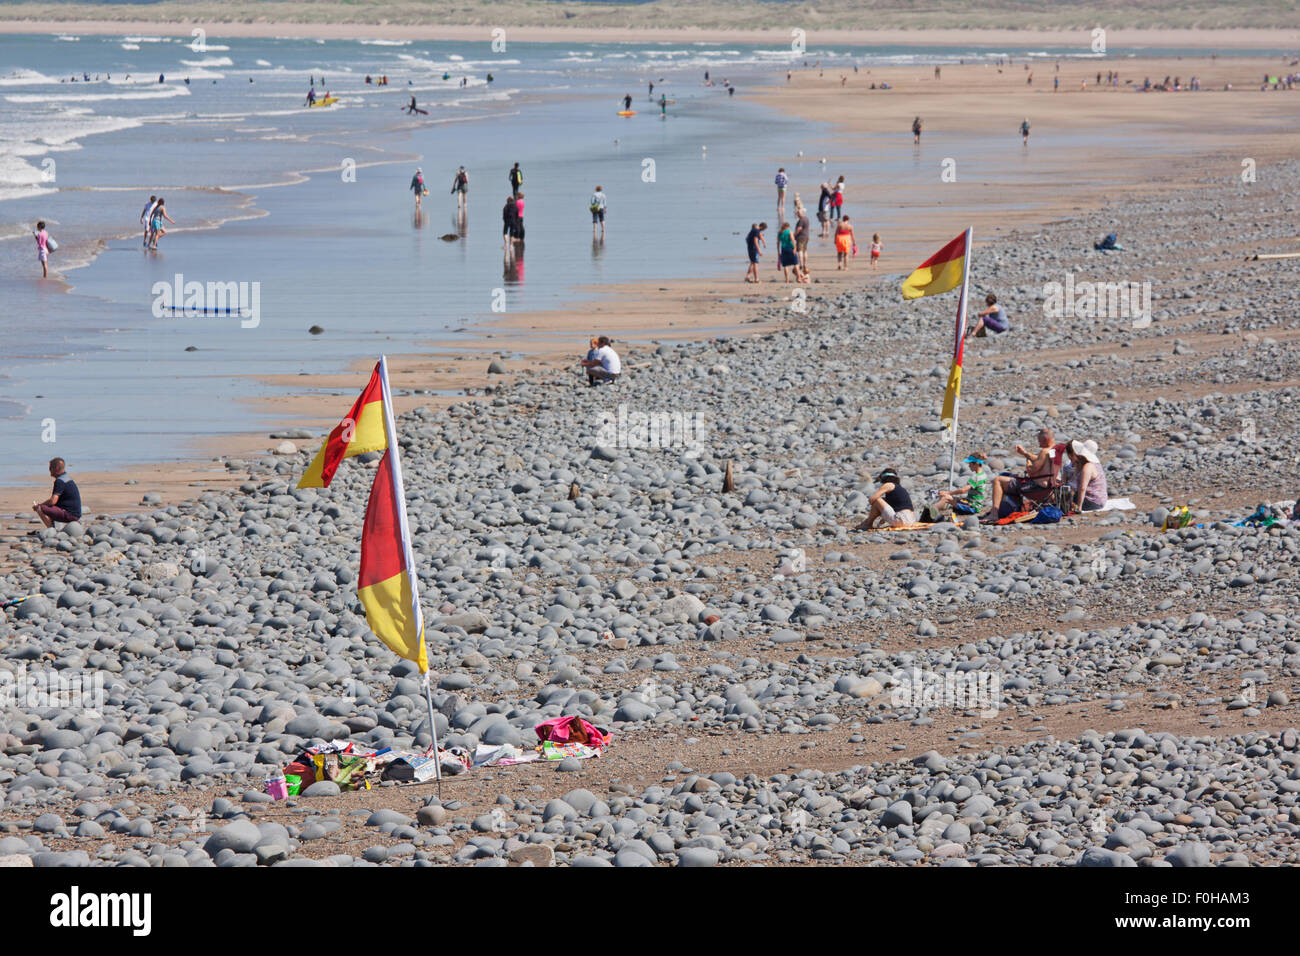 Les vacanciers appréciant le début de l'été sur une plage de North Devon. Les drapeaux jaunes et rouges indiquent les zones de baignade en toute sécurité Banque D'Images